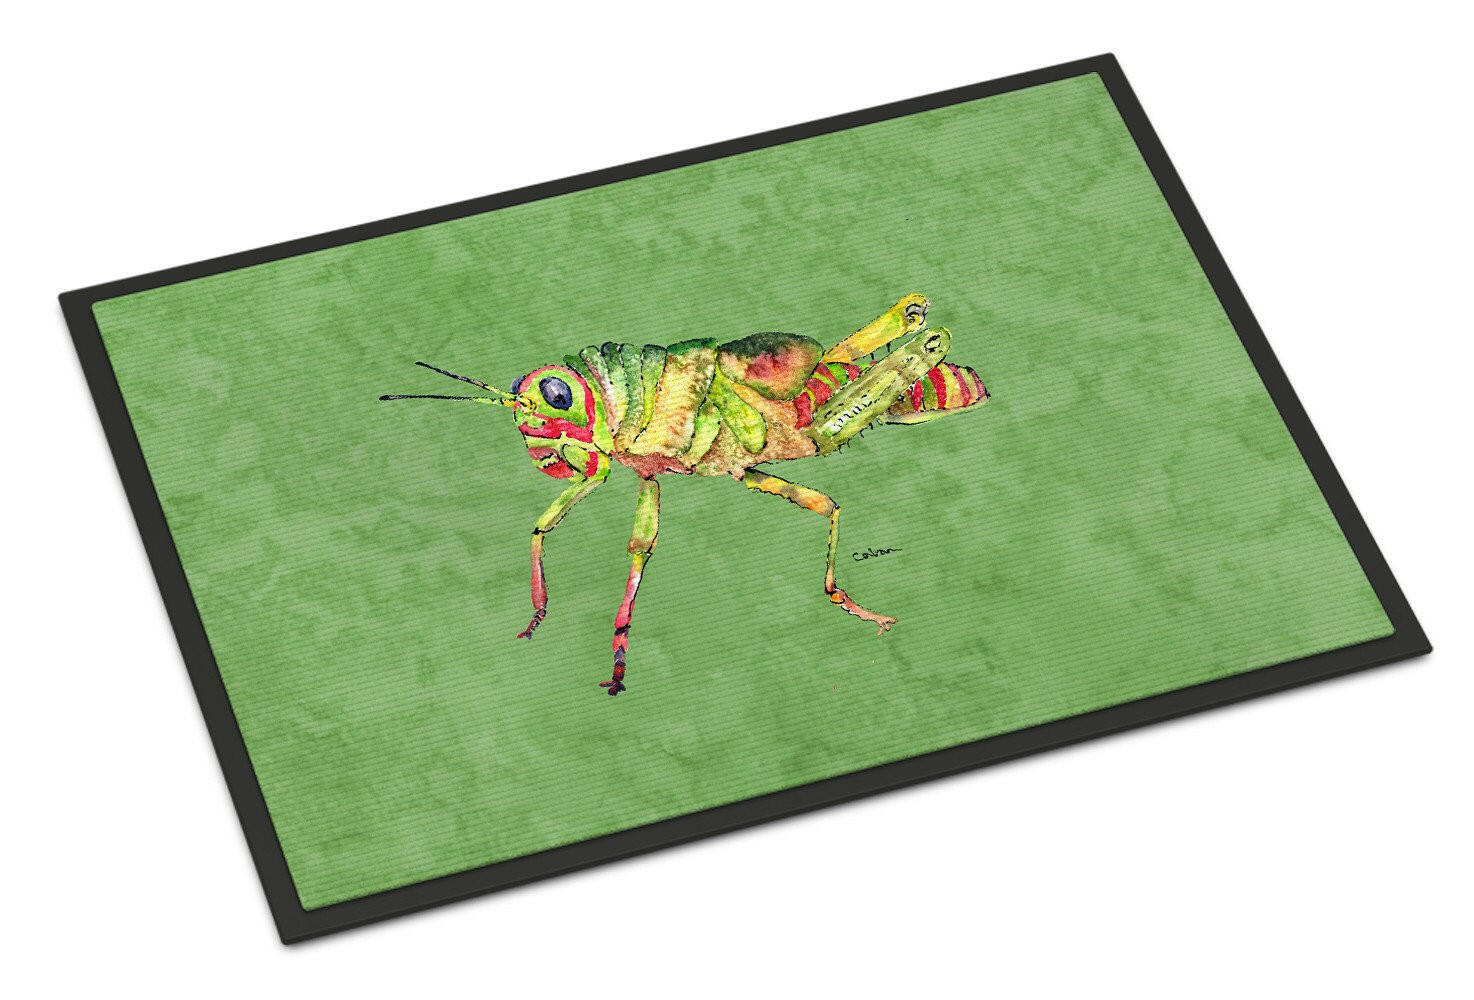 Grasshopper on Avacado Indoor or Outdoor Mat 18x27 Doormat - the-store.com